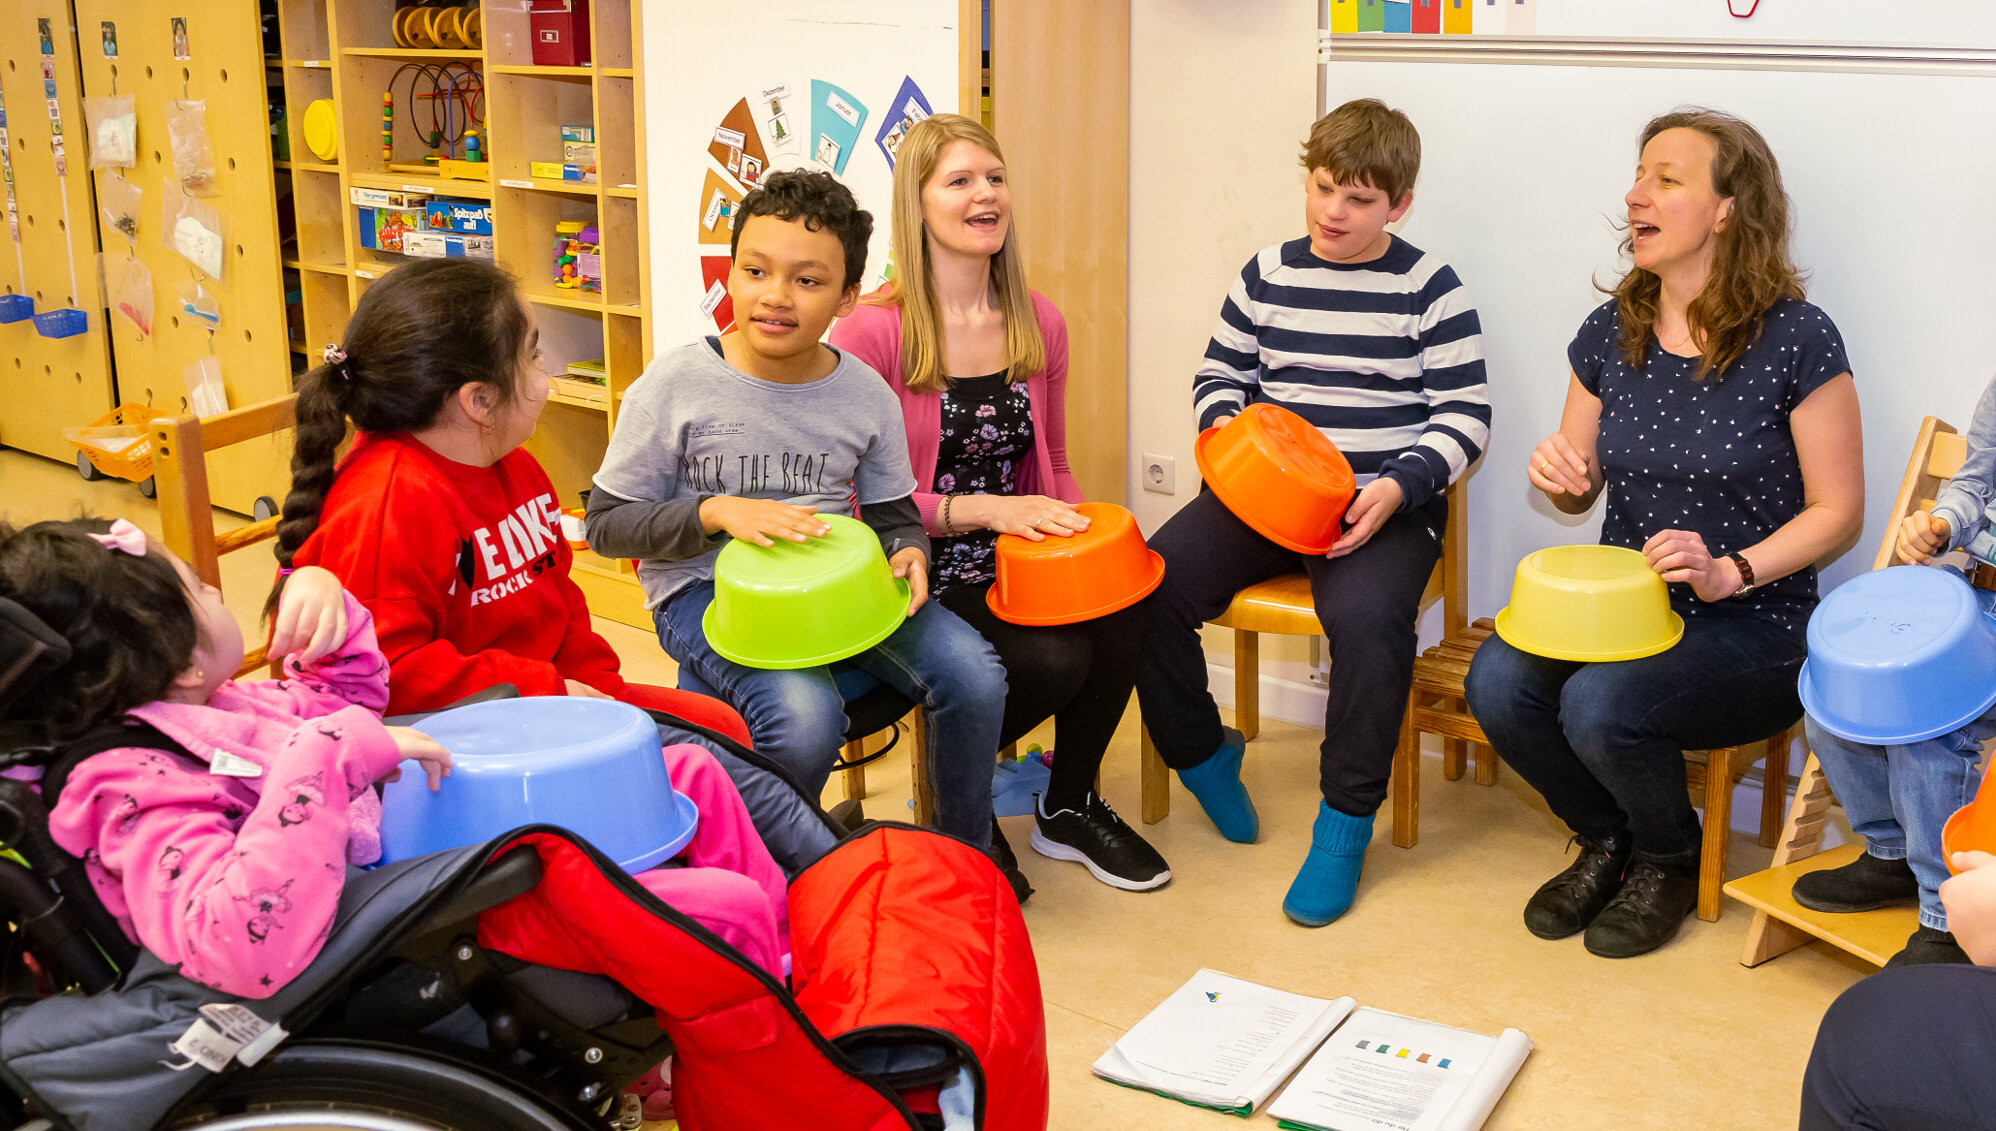 Mehrere Schüler*innen, eine Lehrerin und eine Betreuerin sitzen im Stuhlkreis. Gemeinsam singen und trommeln sie auf bunten Plastikschüsseln.